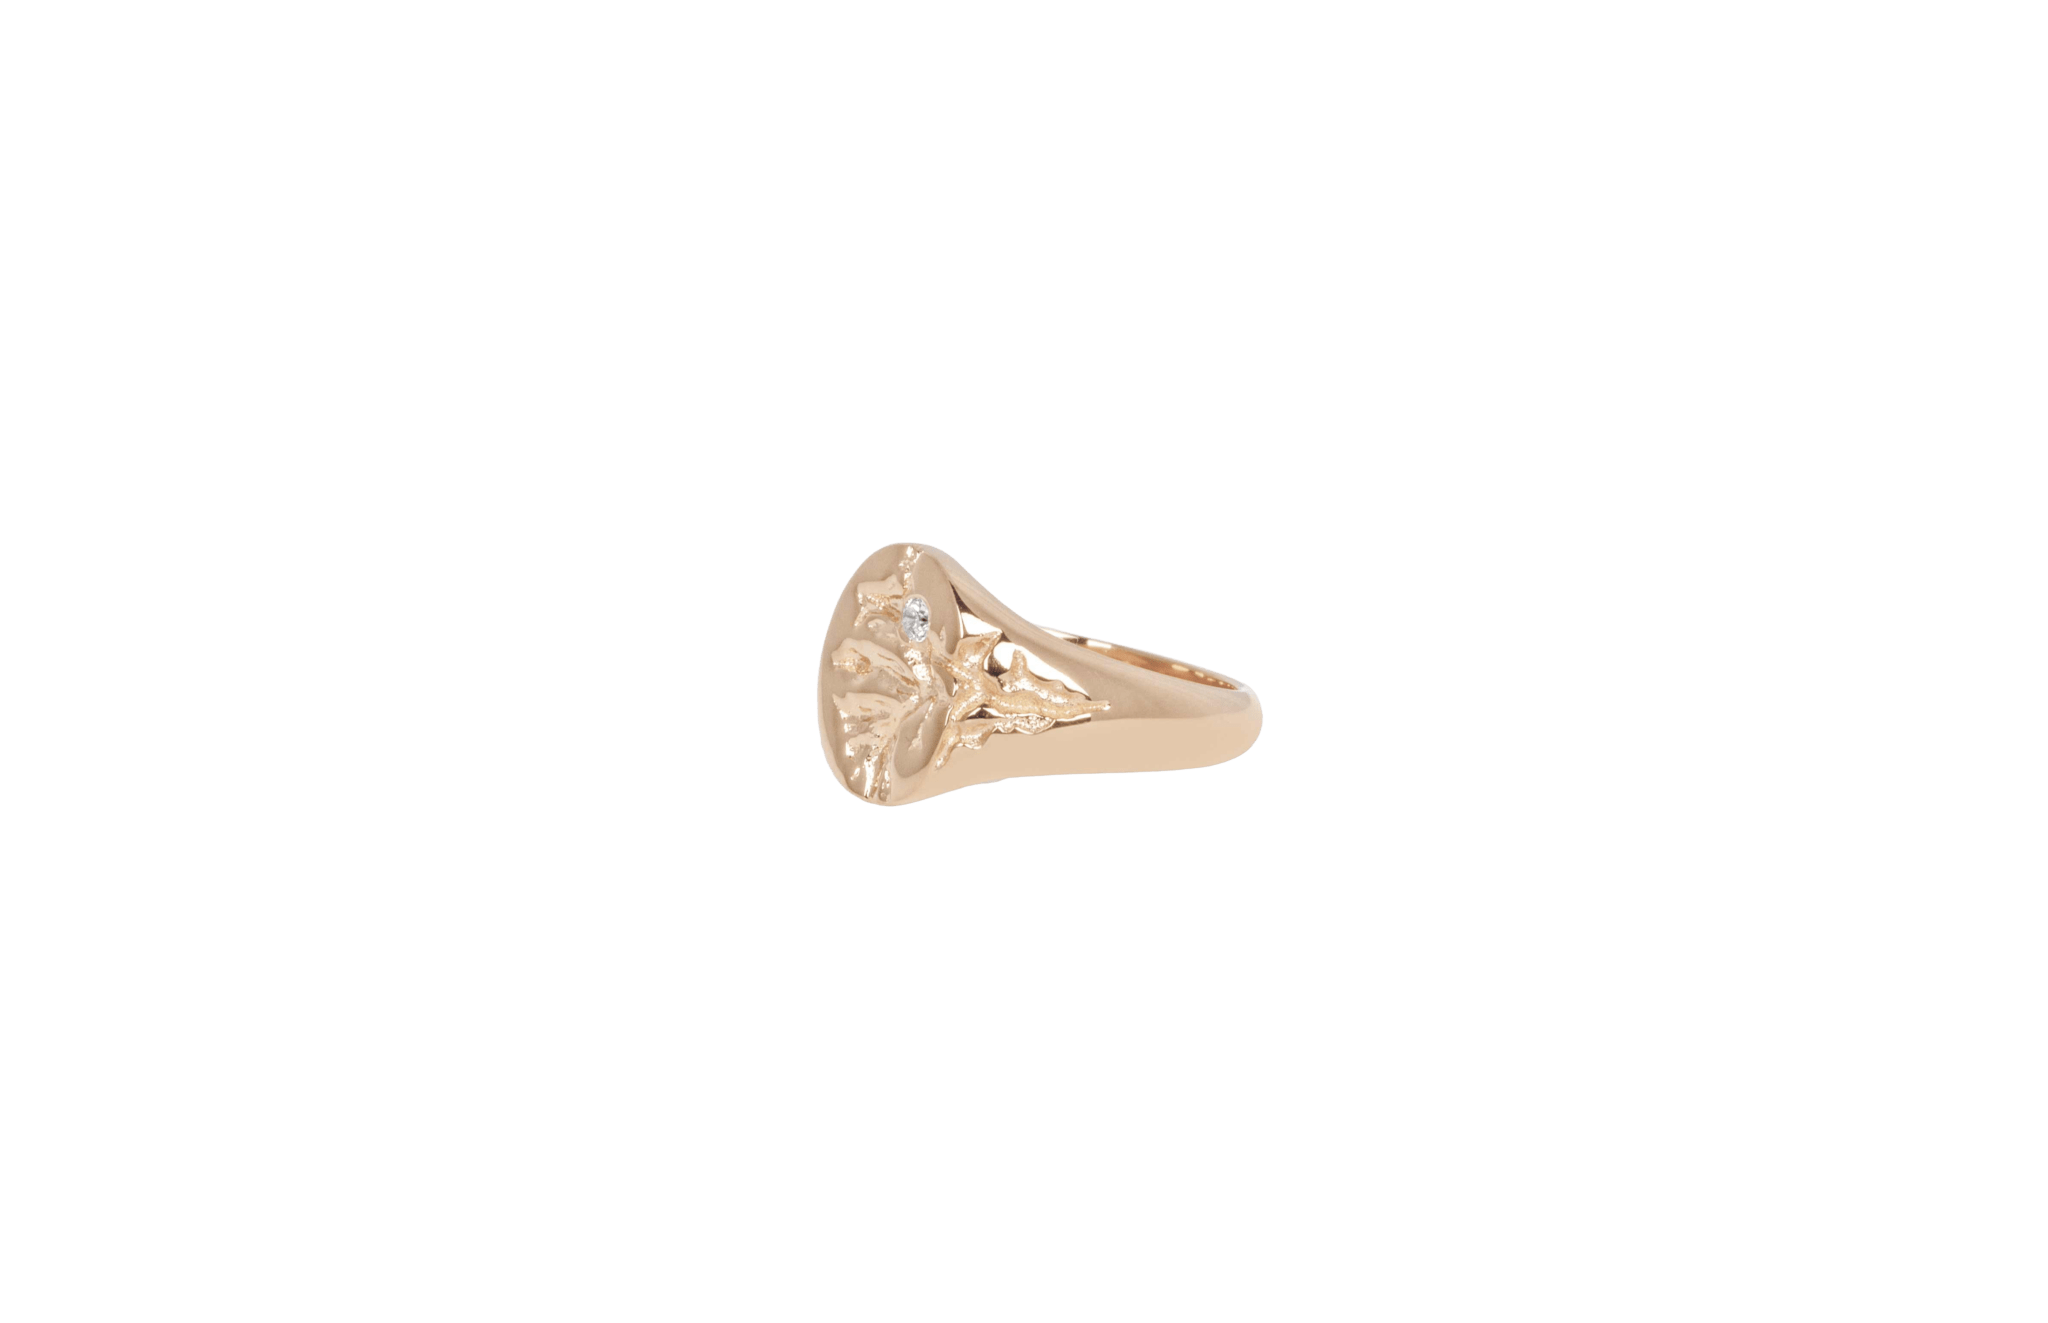 IX Mini Oval Nature Signet Ring Gold 14K